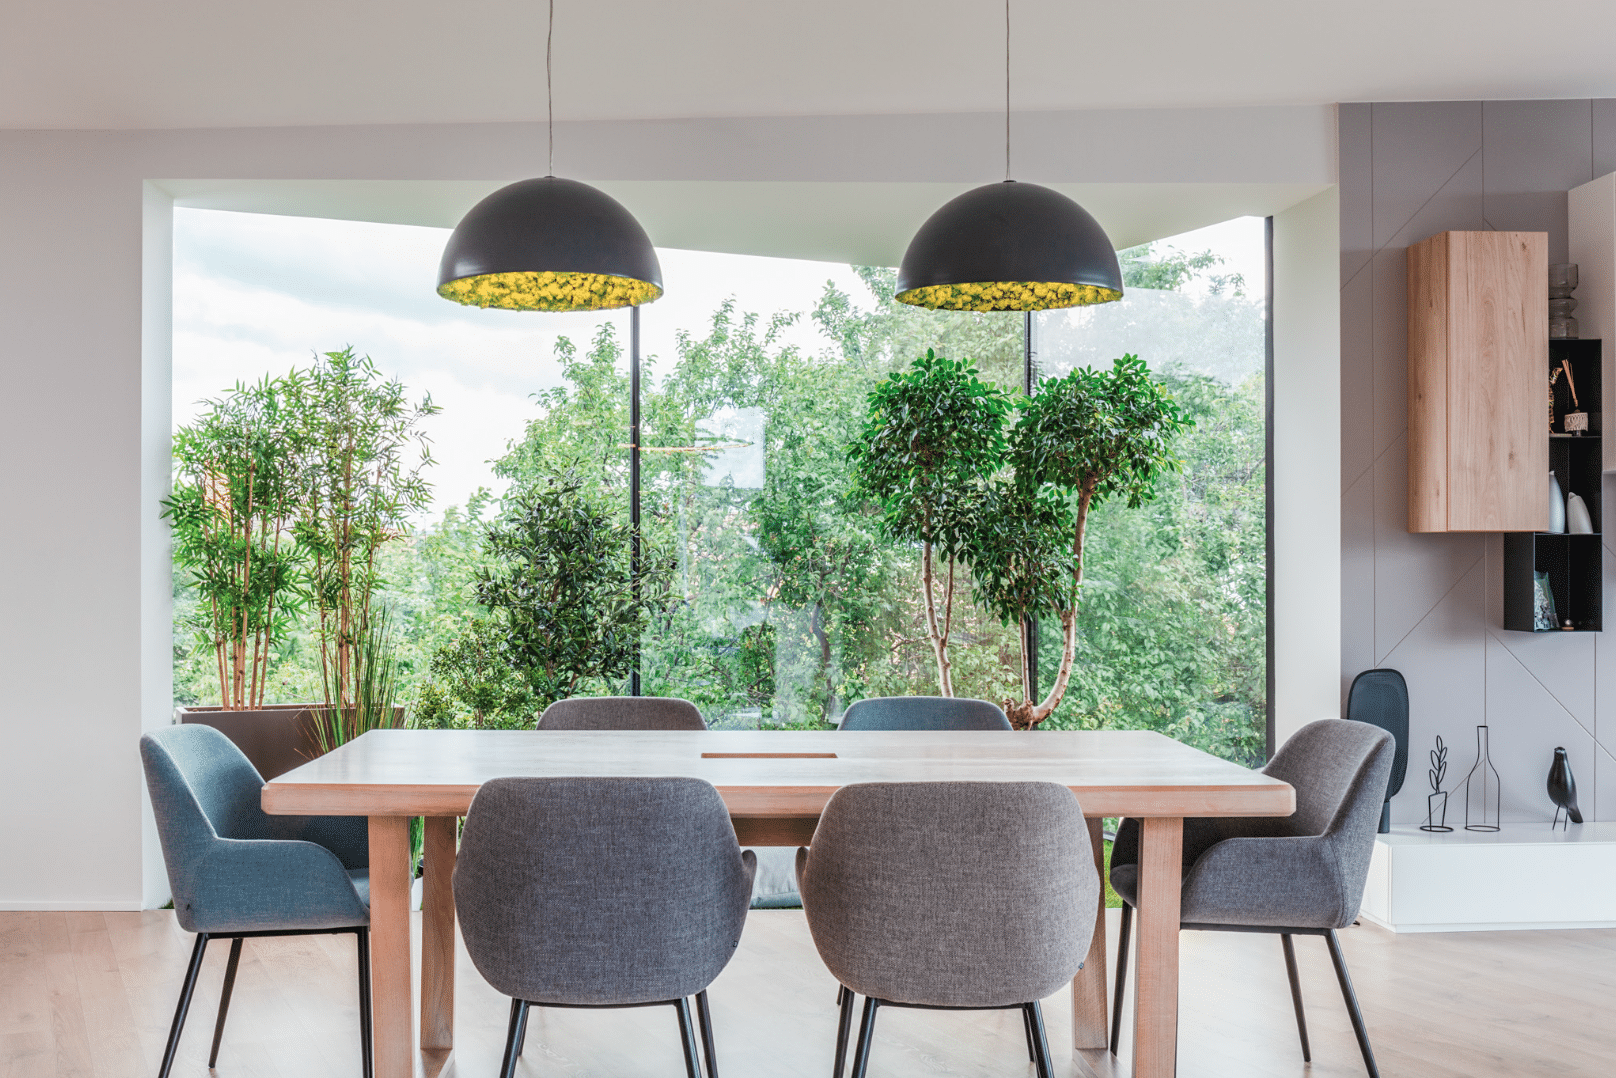 Internorm zeigt ein Esszimmer mit schönem Blick in den grünen Garten, Dank hohen Glaselementen in Form eines modern interpretierten Erkers.